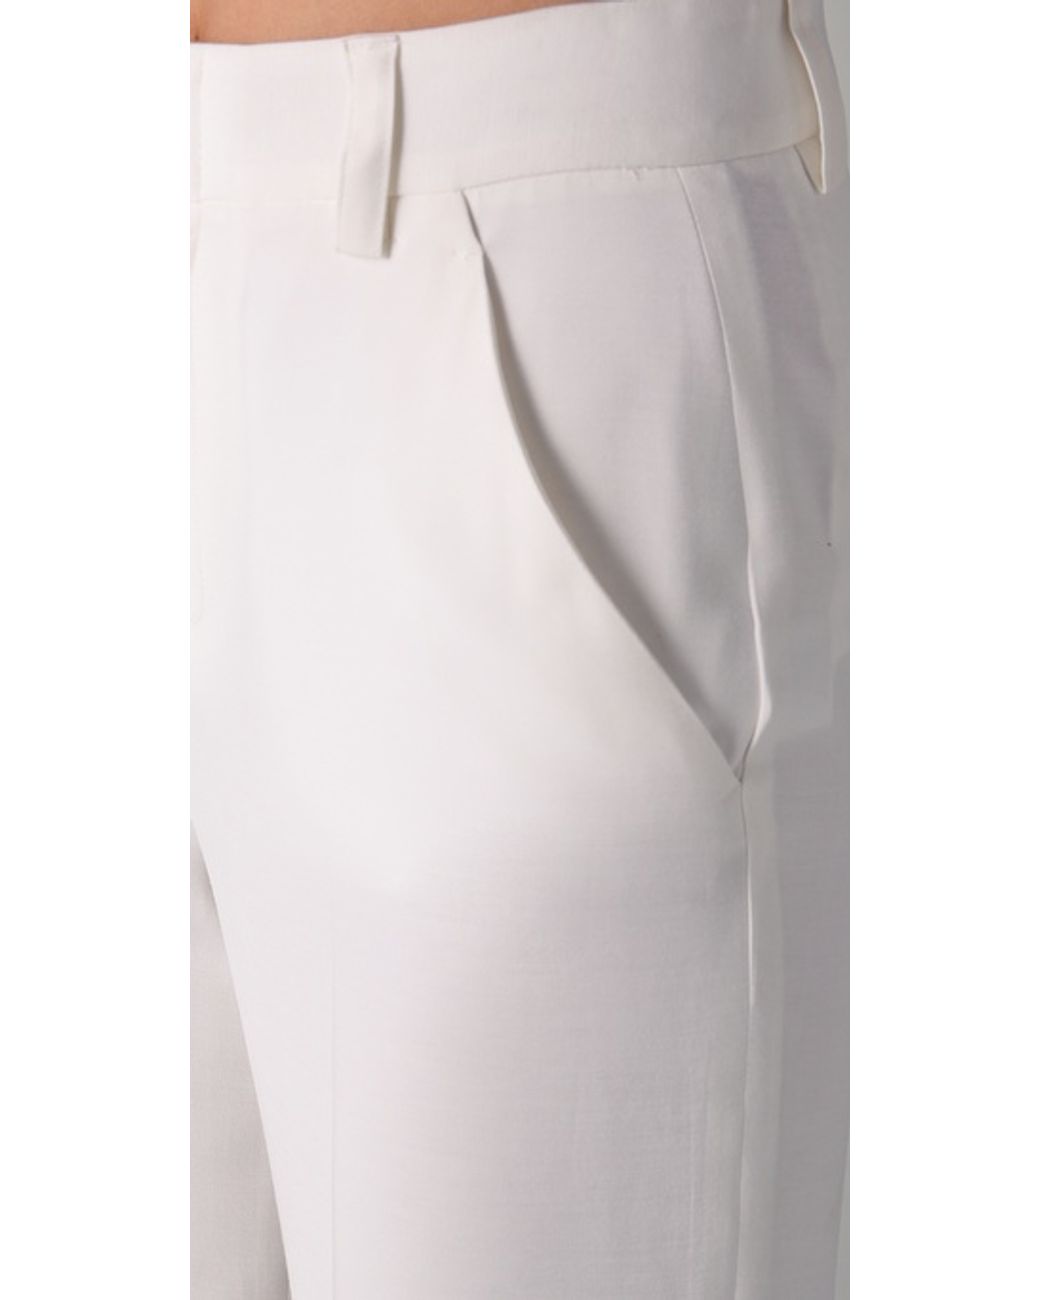 White Wide-Leg Jumpsuit - Two-Piece Jumpsuit - Tie-Back Jumpsuit - Lulus